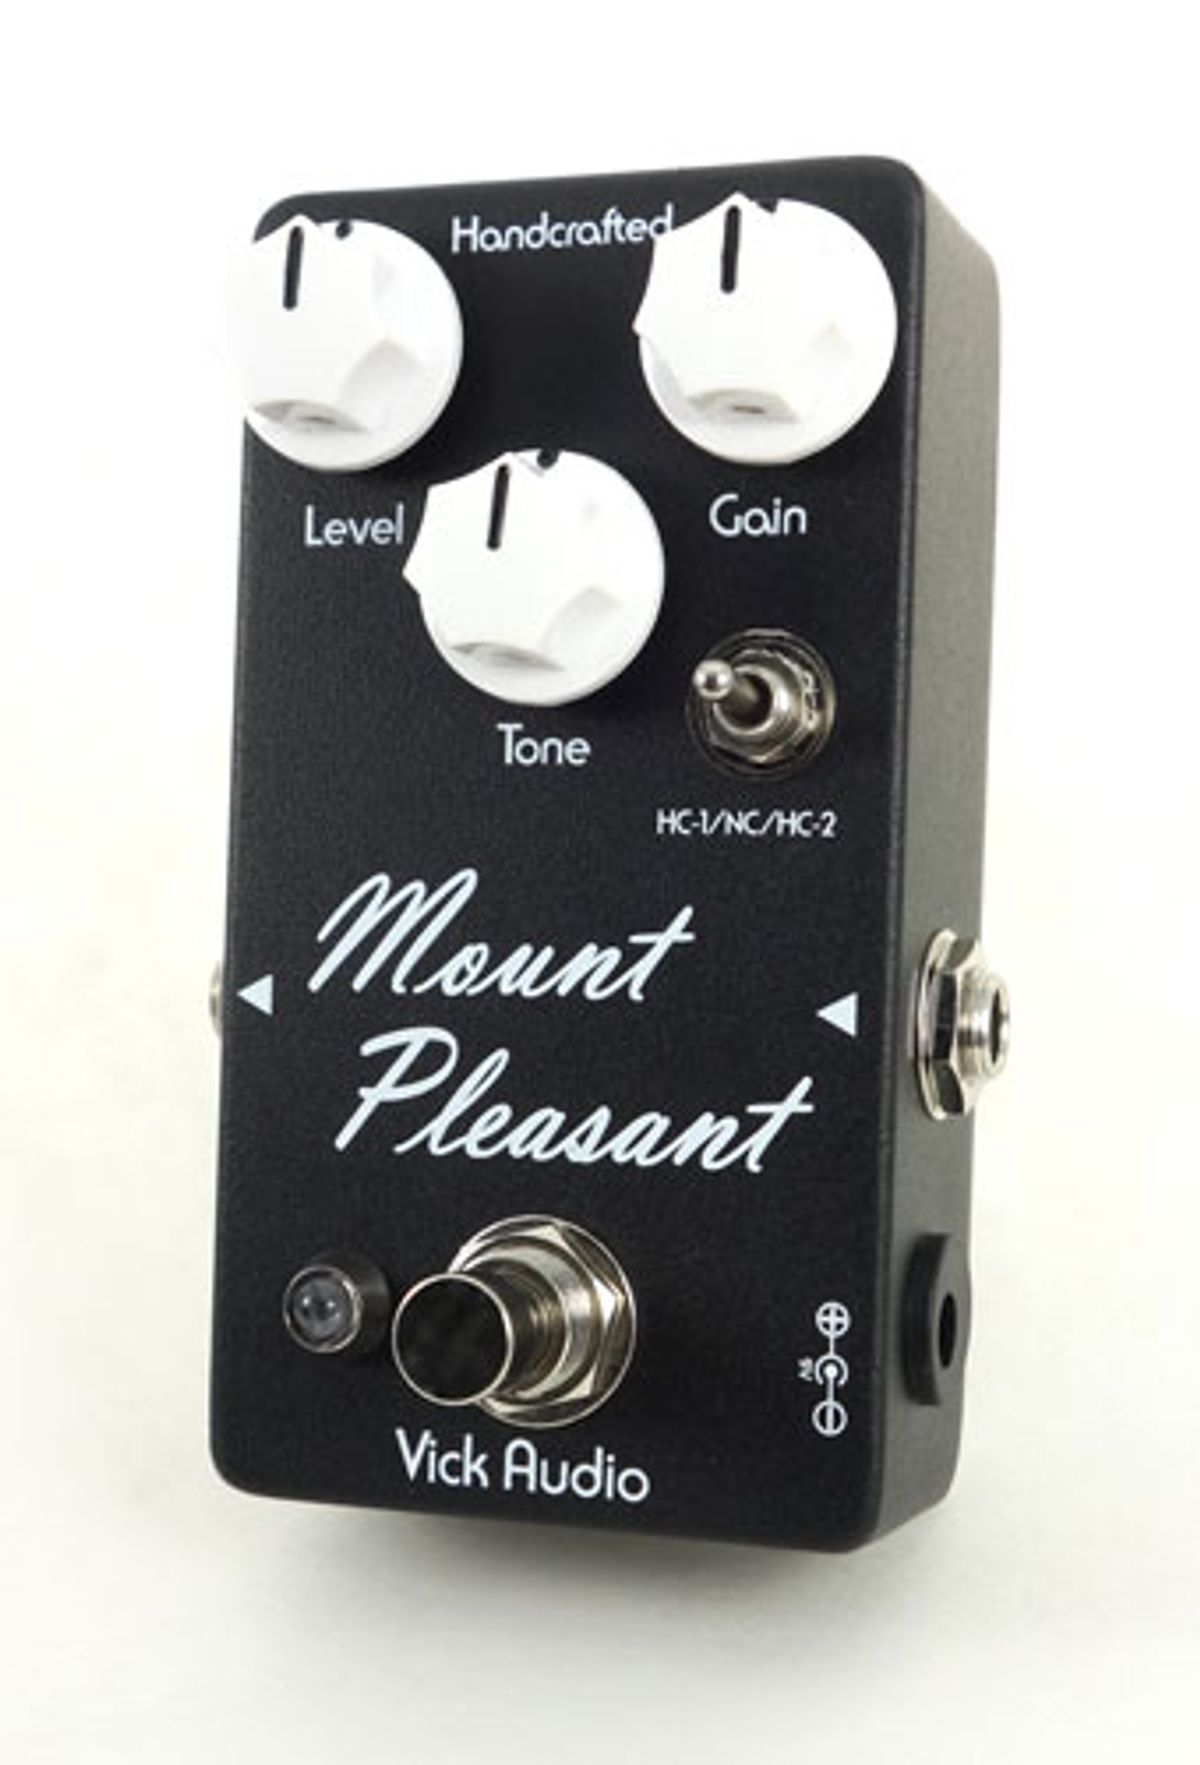 Vick Audio Announces the Mount Pleasant